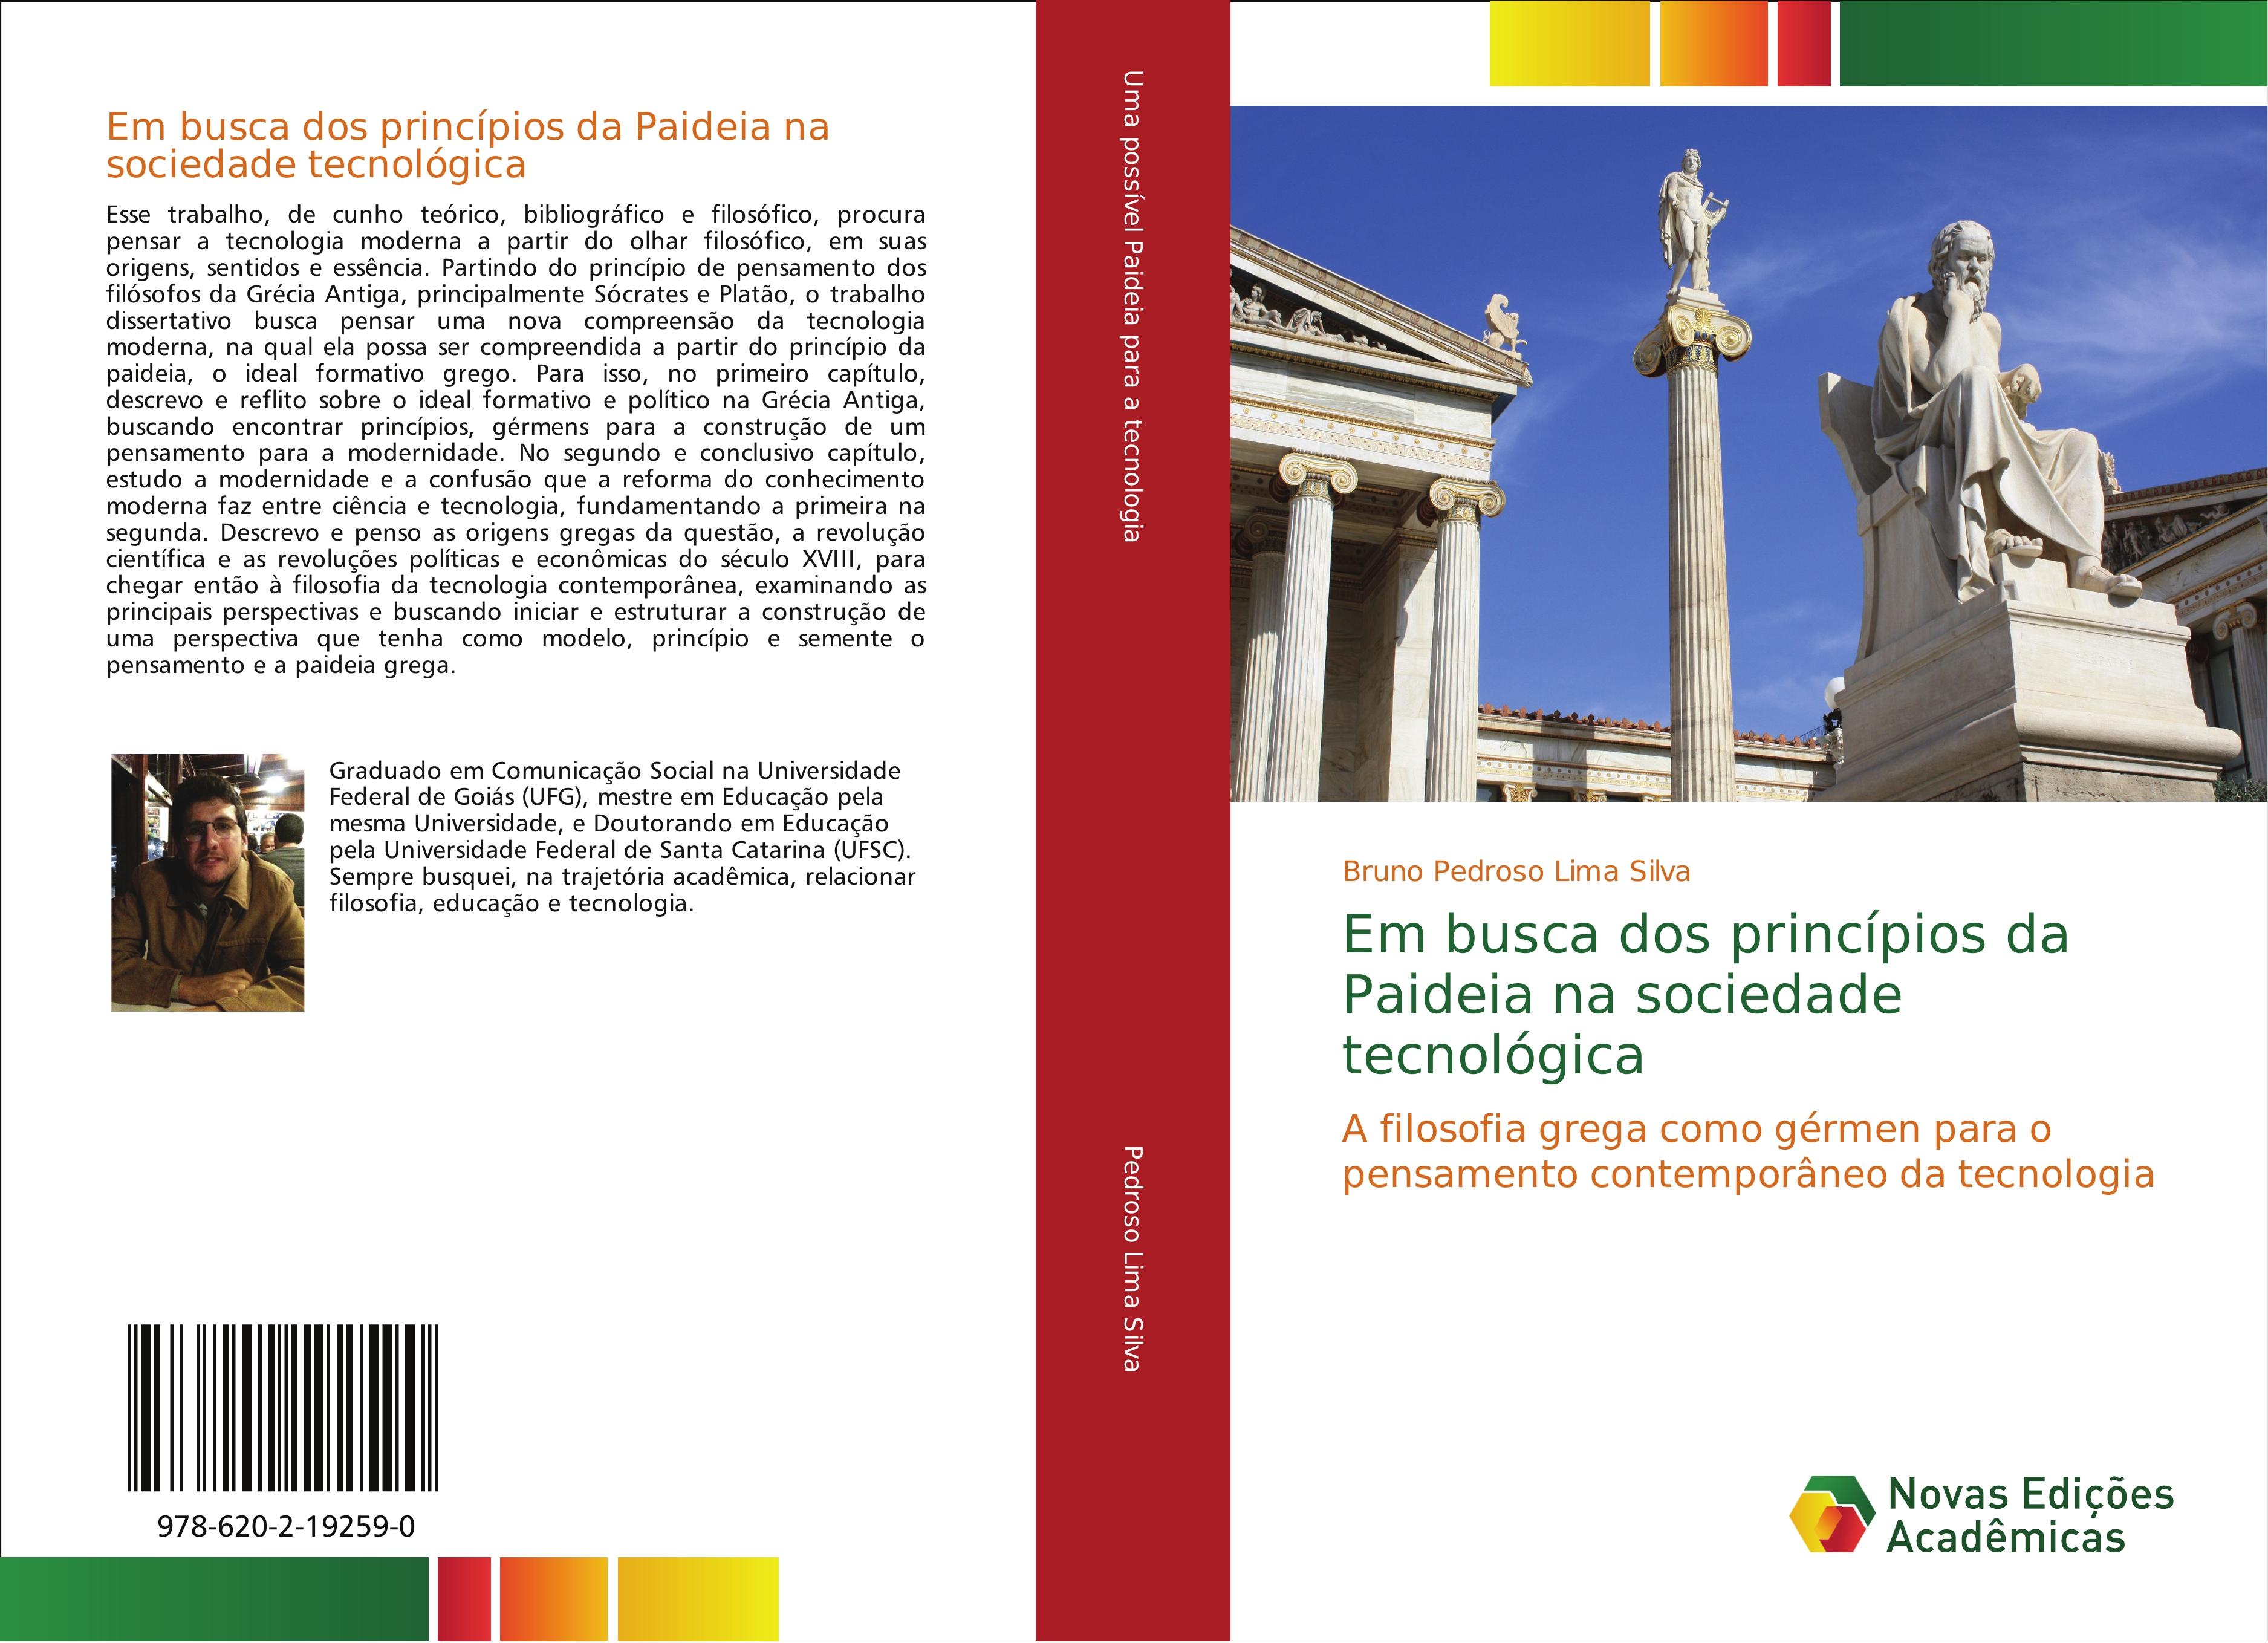 Em busca dos princípios da Paideia na sociedade tecnológica - Bruno Pedroso Lima Silva